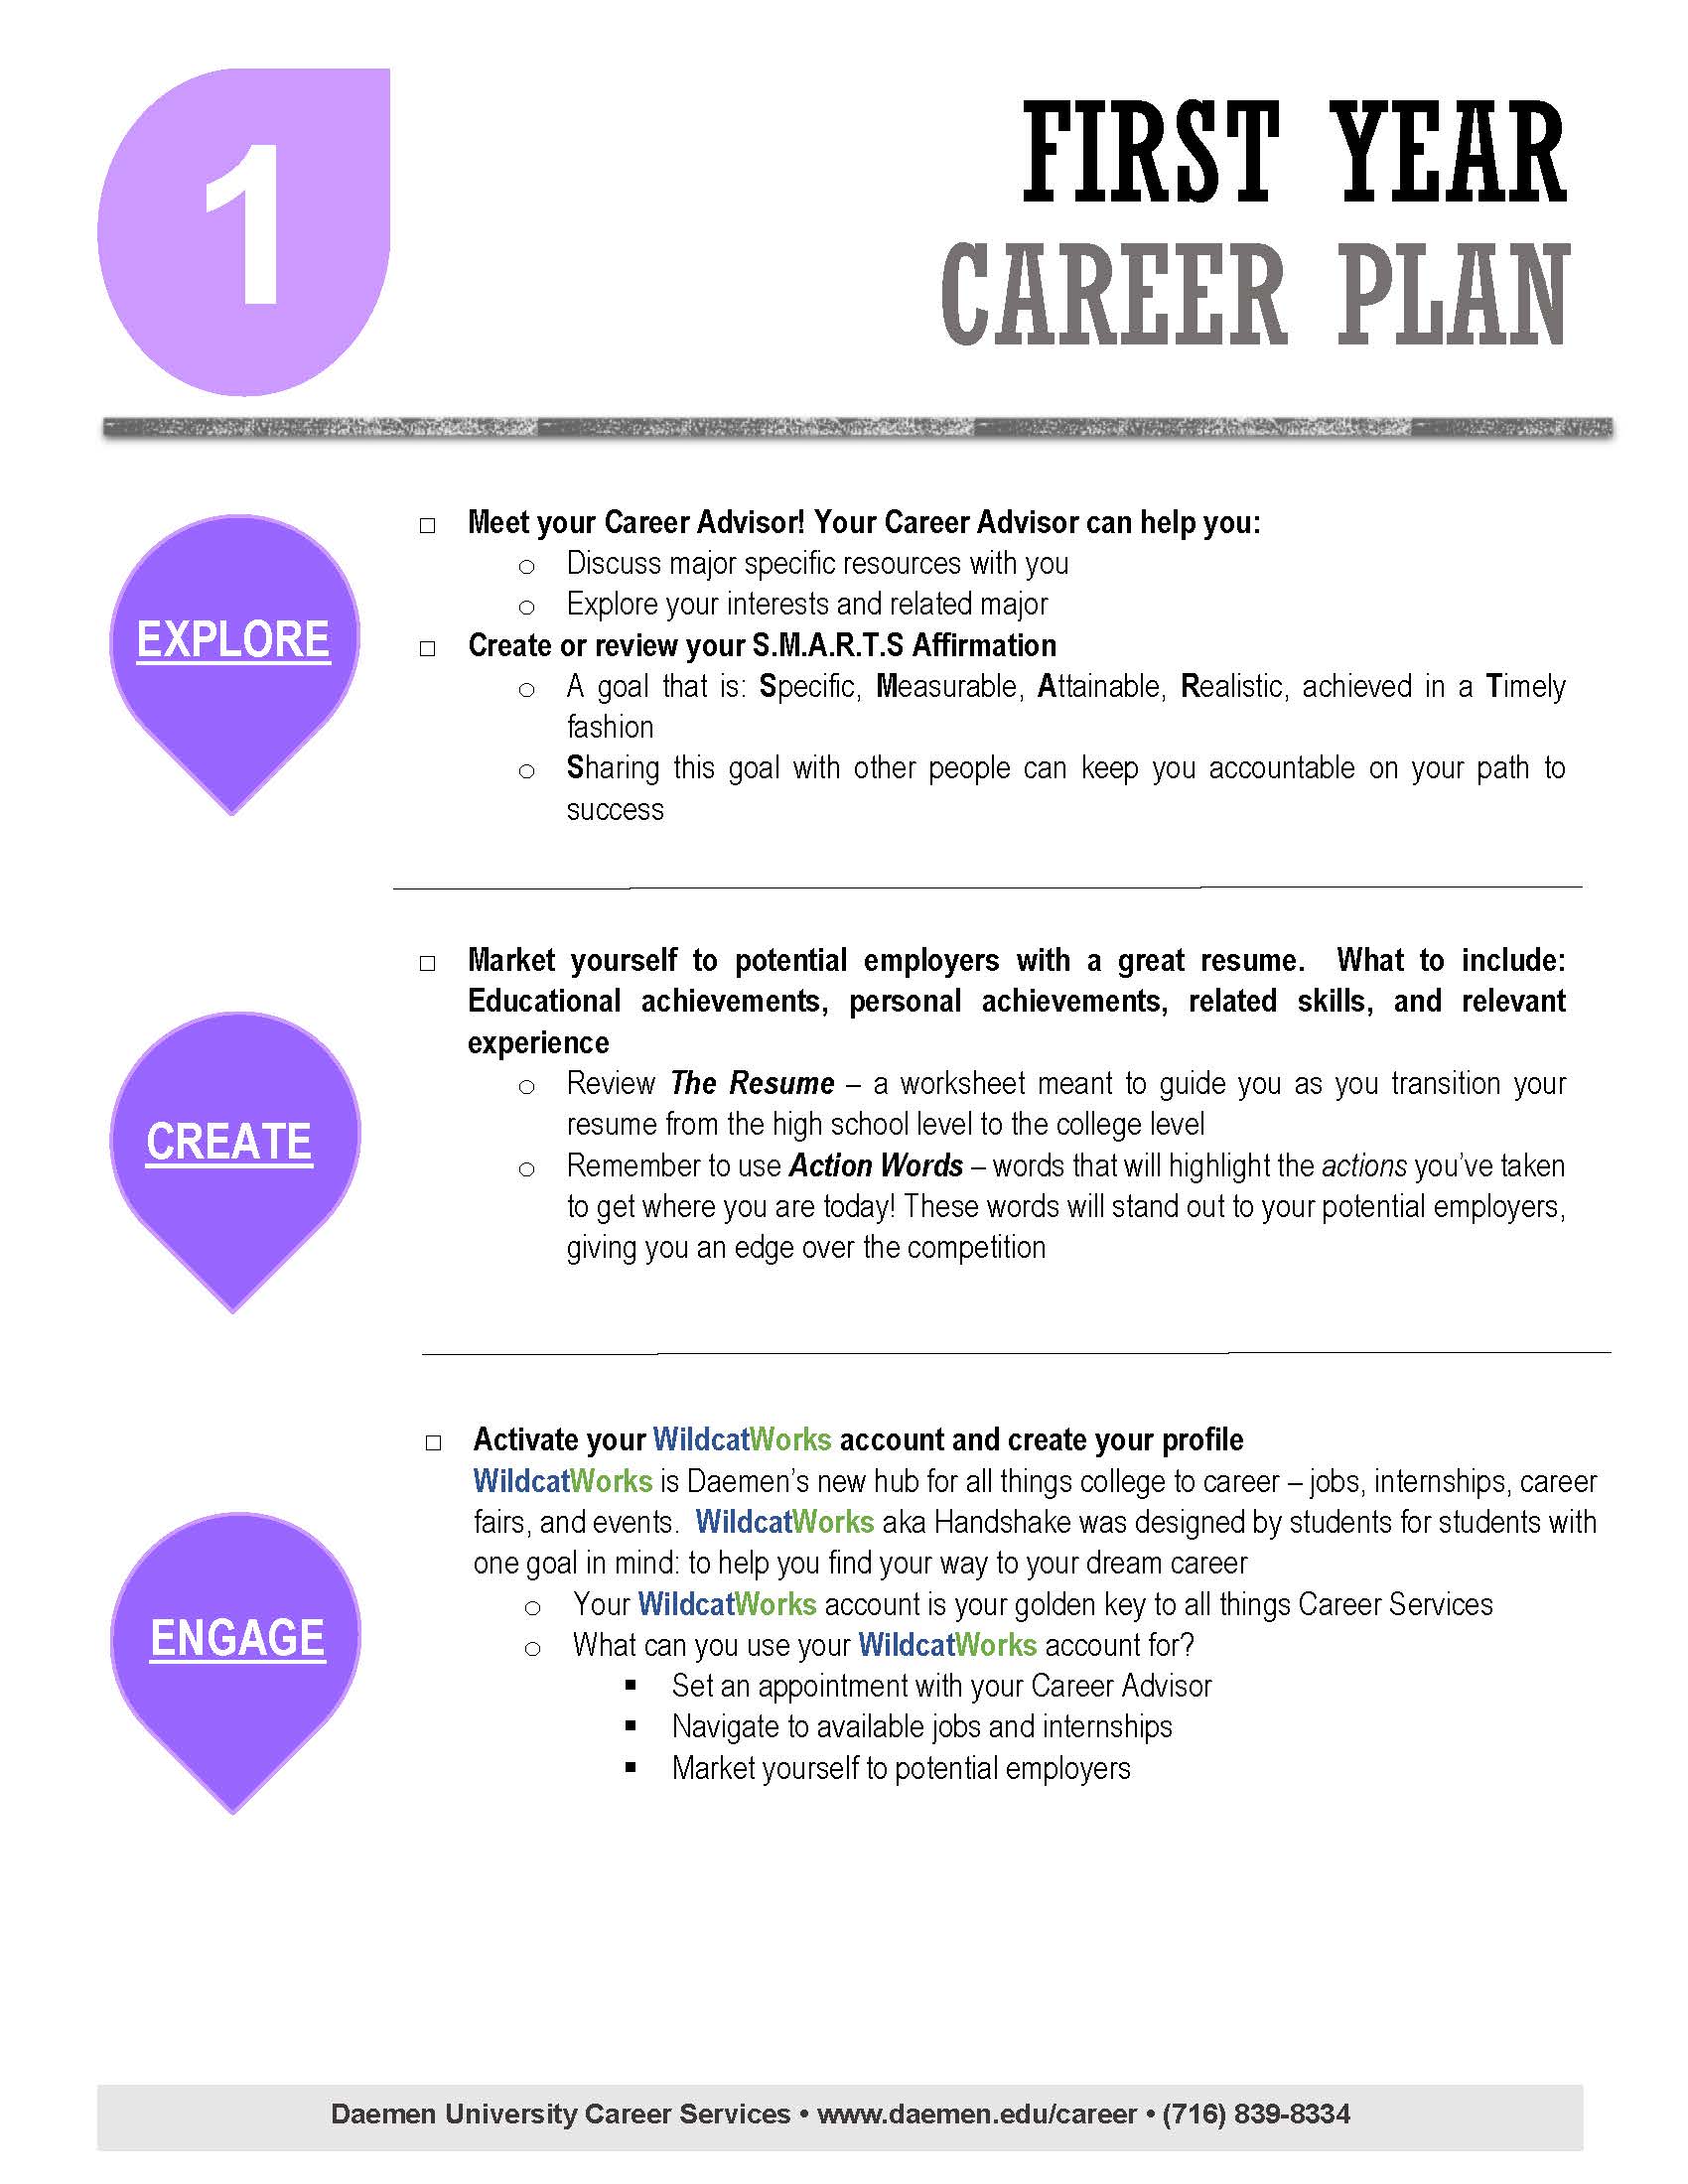 First Year Career Plan